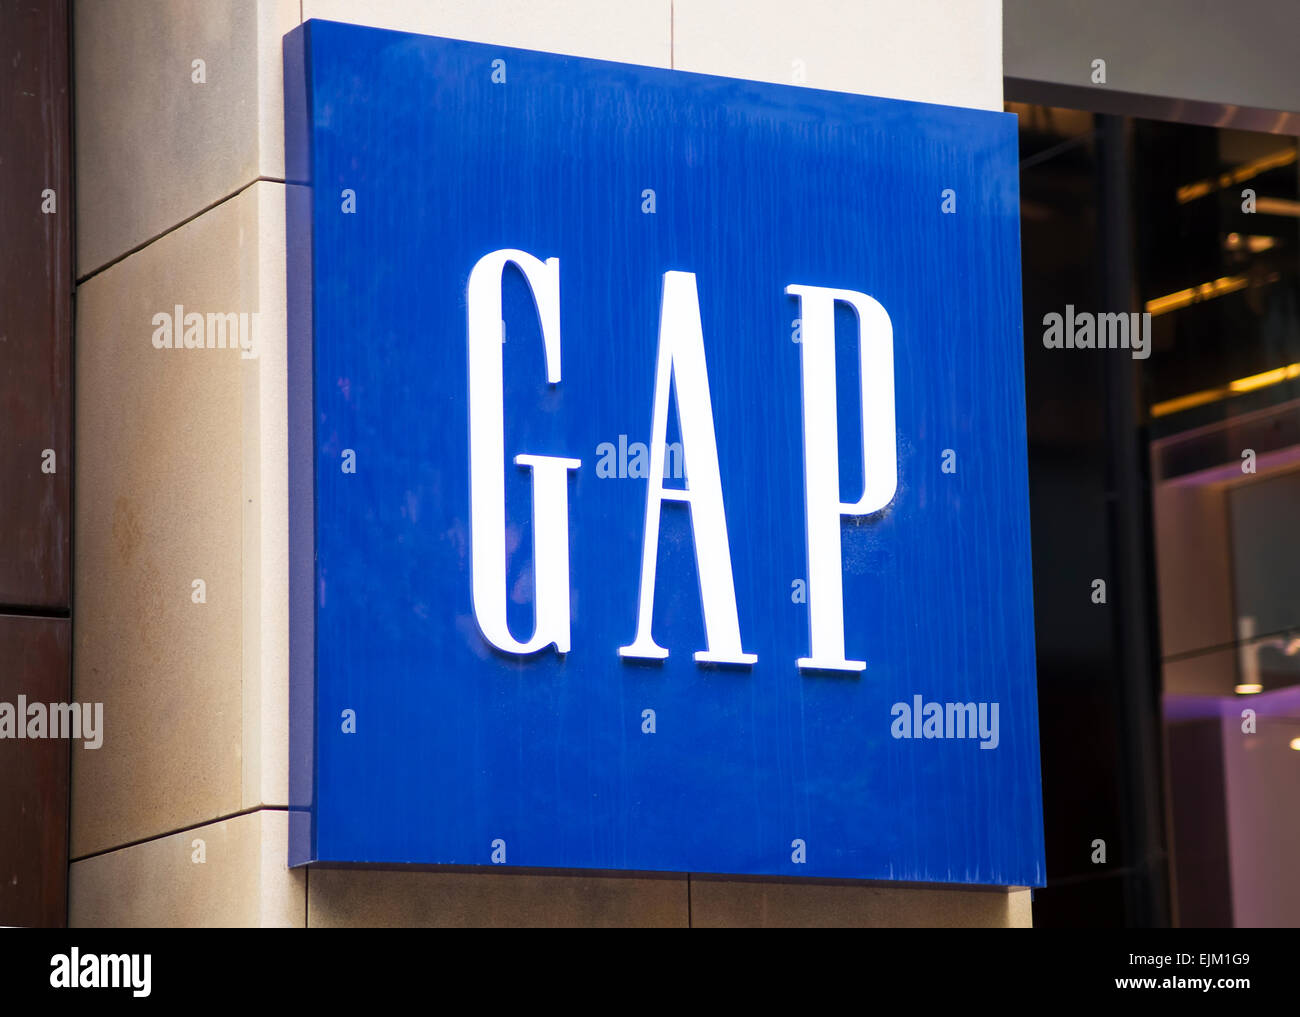 SYDNEY, AUSTRALIE - Février 9, 2015 : Détail de Gap store à Sydney, Australie. L'écart est une multinationale américaine de l'habillement et à l'ac Banque D'Images